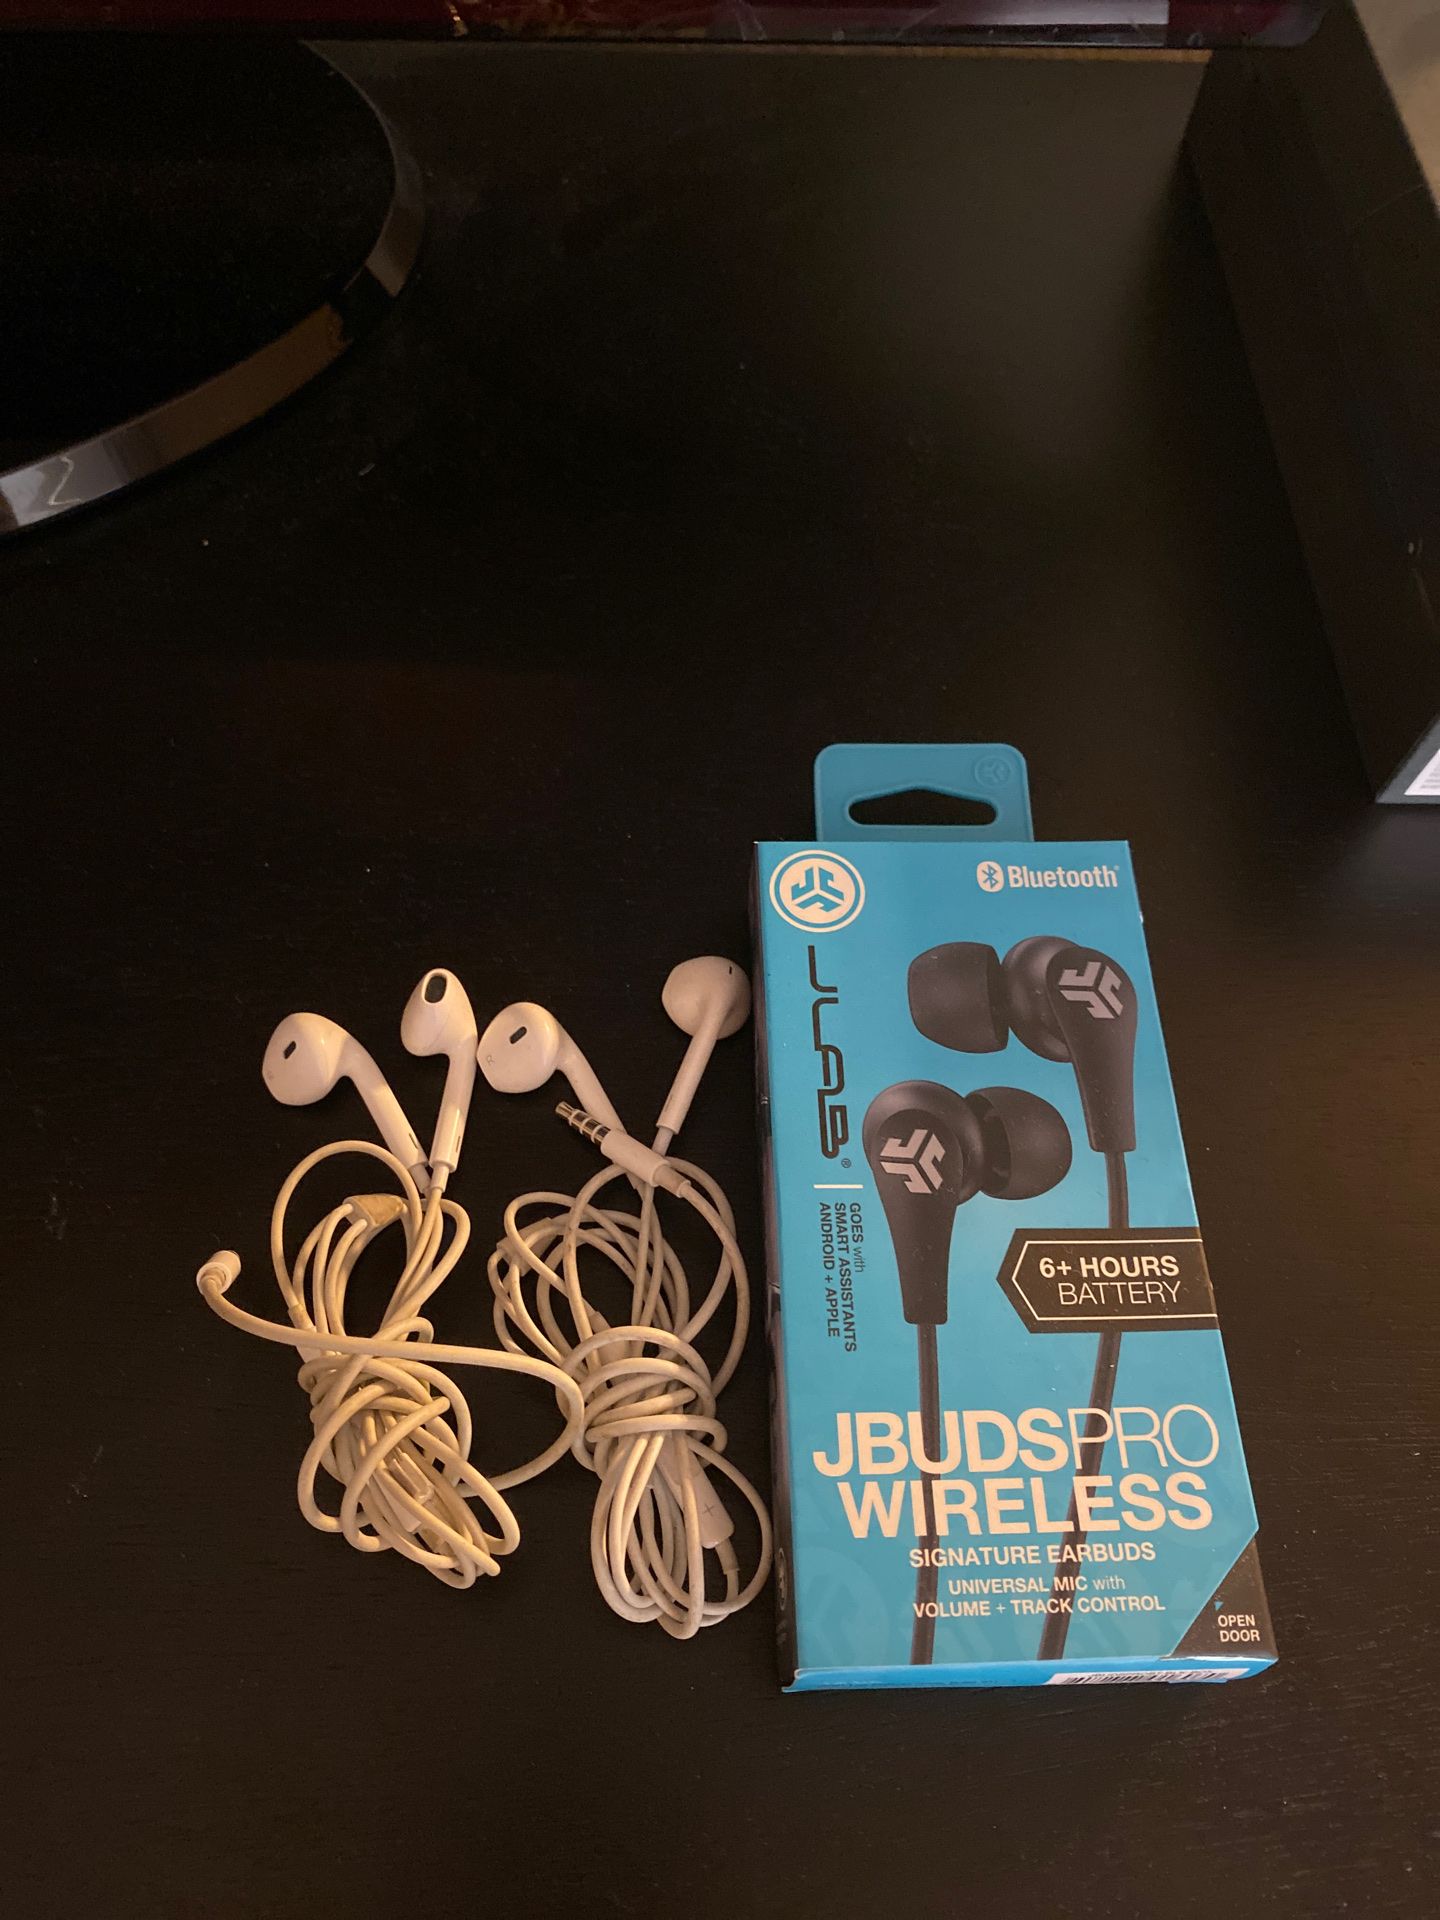 3 sets of headphones- wireless headphones included